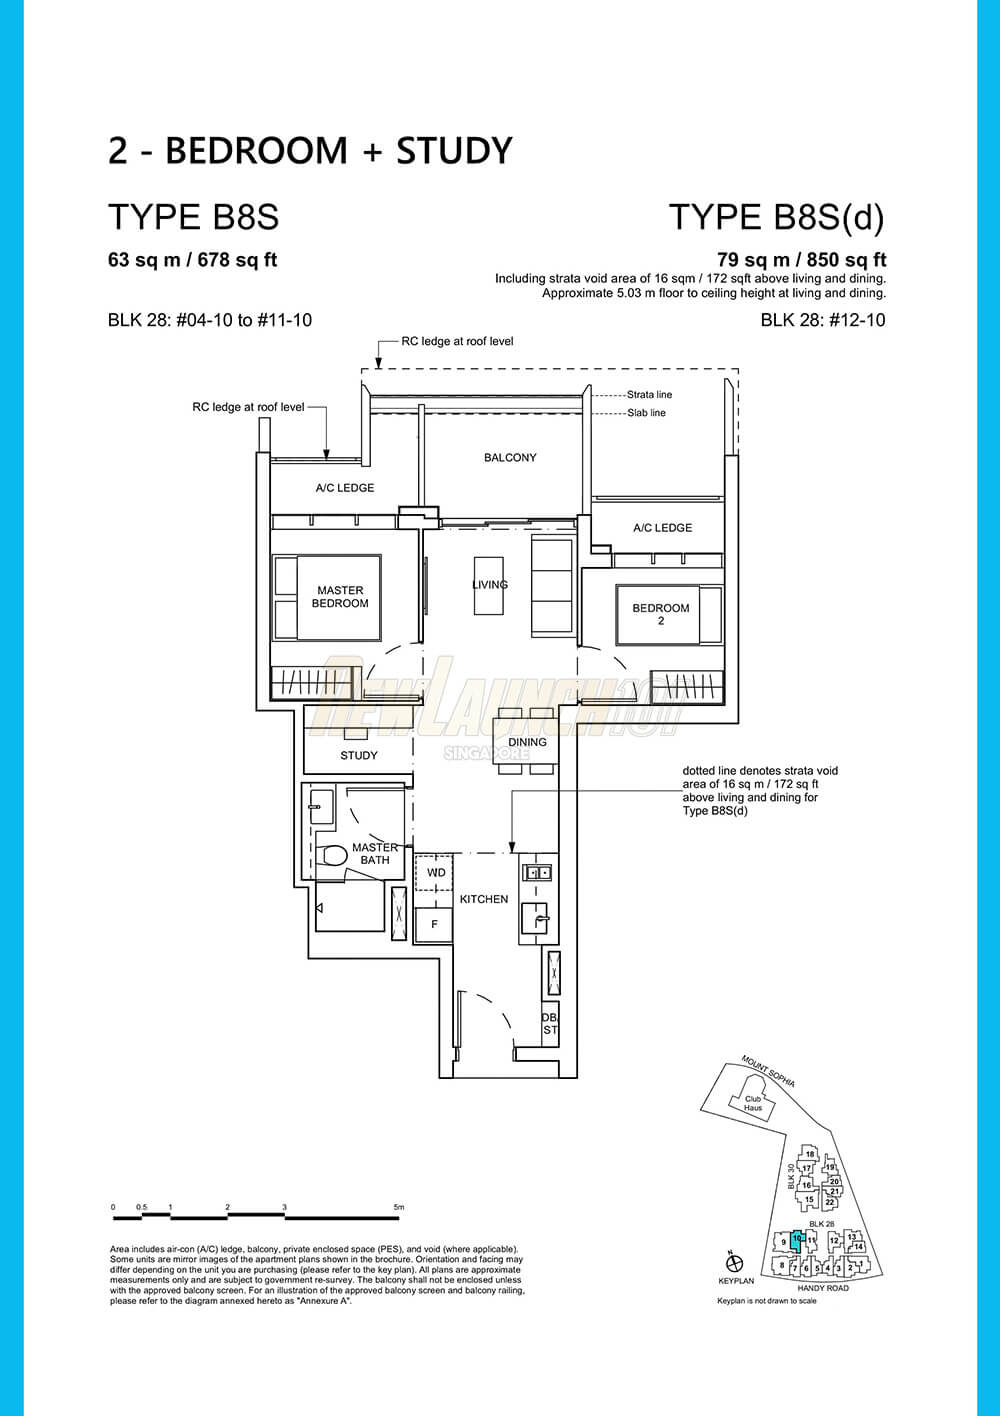 Haus on Handy Floor Plan 2-Bedroom Study Type B8S